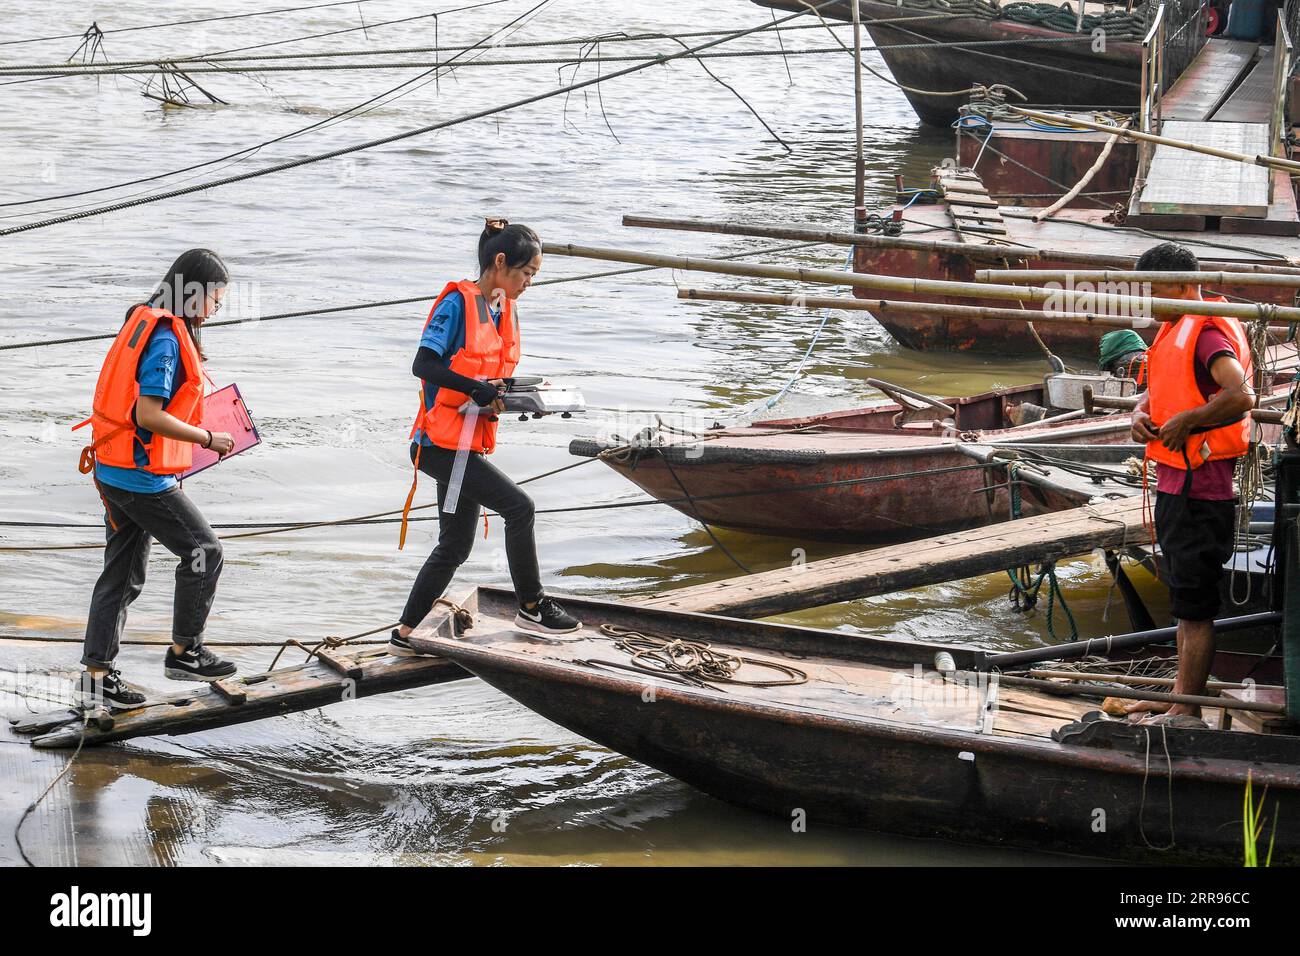 210530 -- GUIPING, le 30 mai 2021 -- Yuan Ting 2nd L et ses collègues montent à bord d'un bateau de pêche pour mener des recherches sur les ressources halieutiques à la Datengxia gorge Water conservancy à Guiping, dans la région autonome de Guangxi Zhuang, dans le sud de la Chine, le 29 mai 2021. Expert en pêche écosystémique et en élevage d’espèces de poissons rares, le Dr Yuan Ting est venu à la Dateng gorge Water conservancy en 2020 avec une équipe de chercheurs. Leurs recherches portent principalement sur le sauvetage, la protection et la reproduction d'espèces de poissons rares indigènes du bassin de la rivière des perles. Le 28 mai, l'équipe de Yuan a sorti 100 000 frites de poisson qu'ils ont élevées en un an Banque D'Images